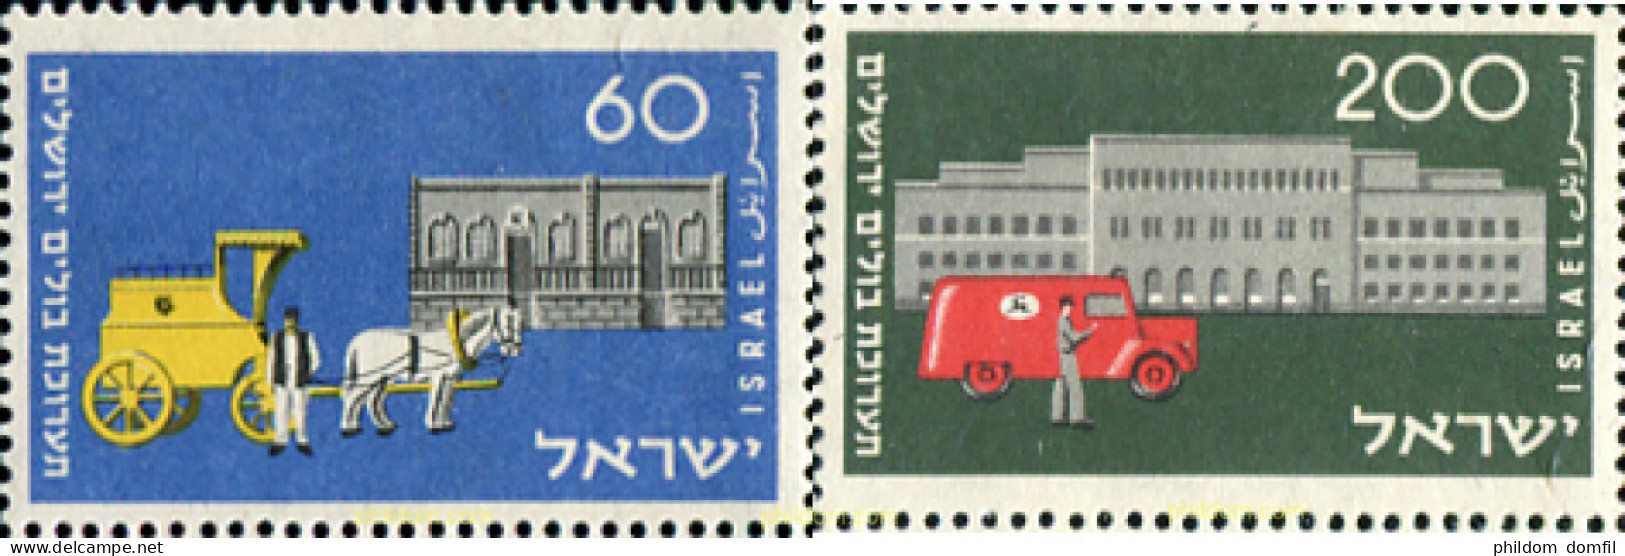 327688 HINGED ISRAEL 1954 CENTENARIO DEL SERVICIO POSTAL - Neufs (sans Tabs)